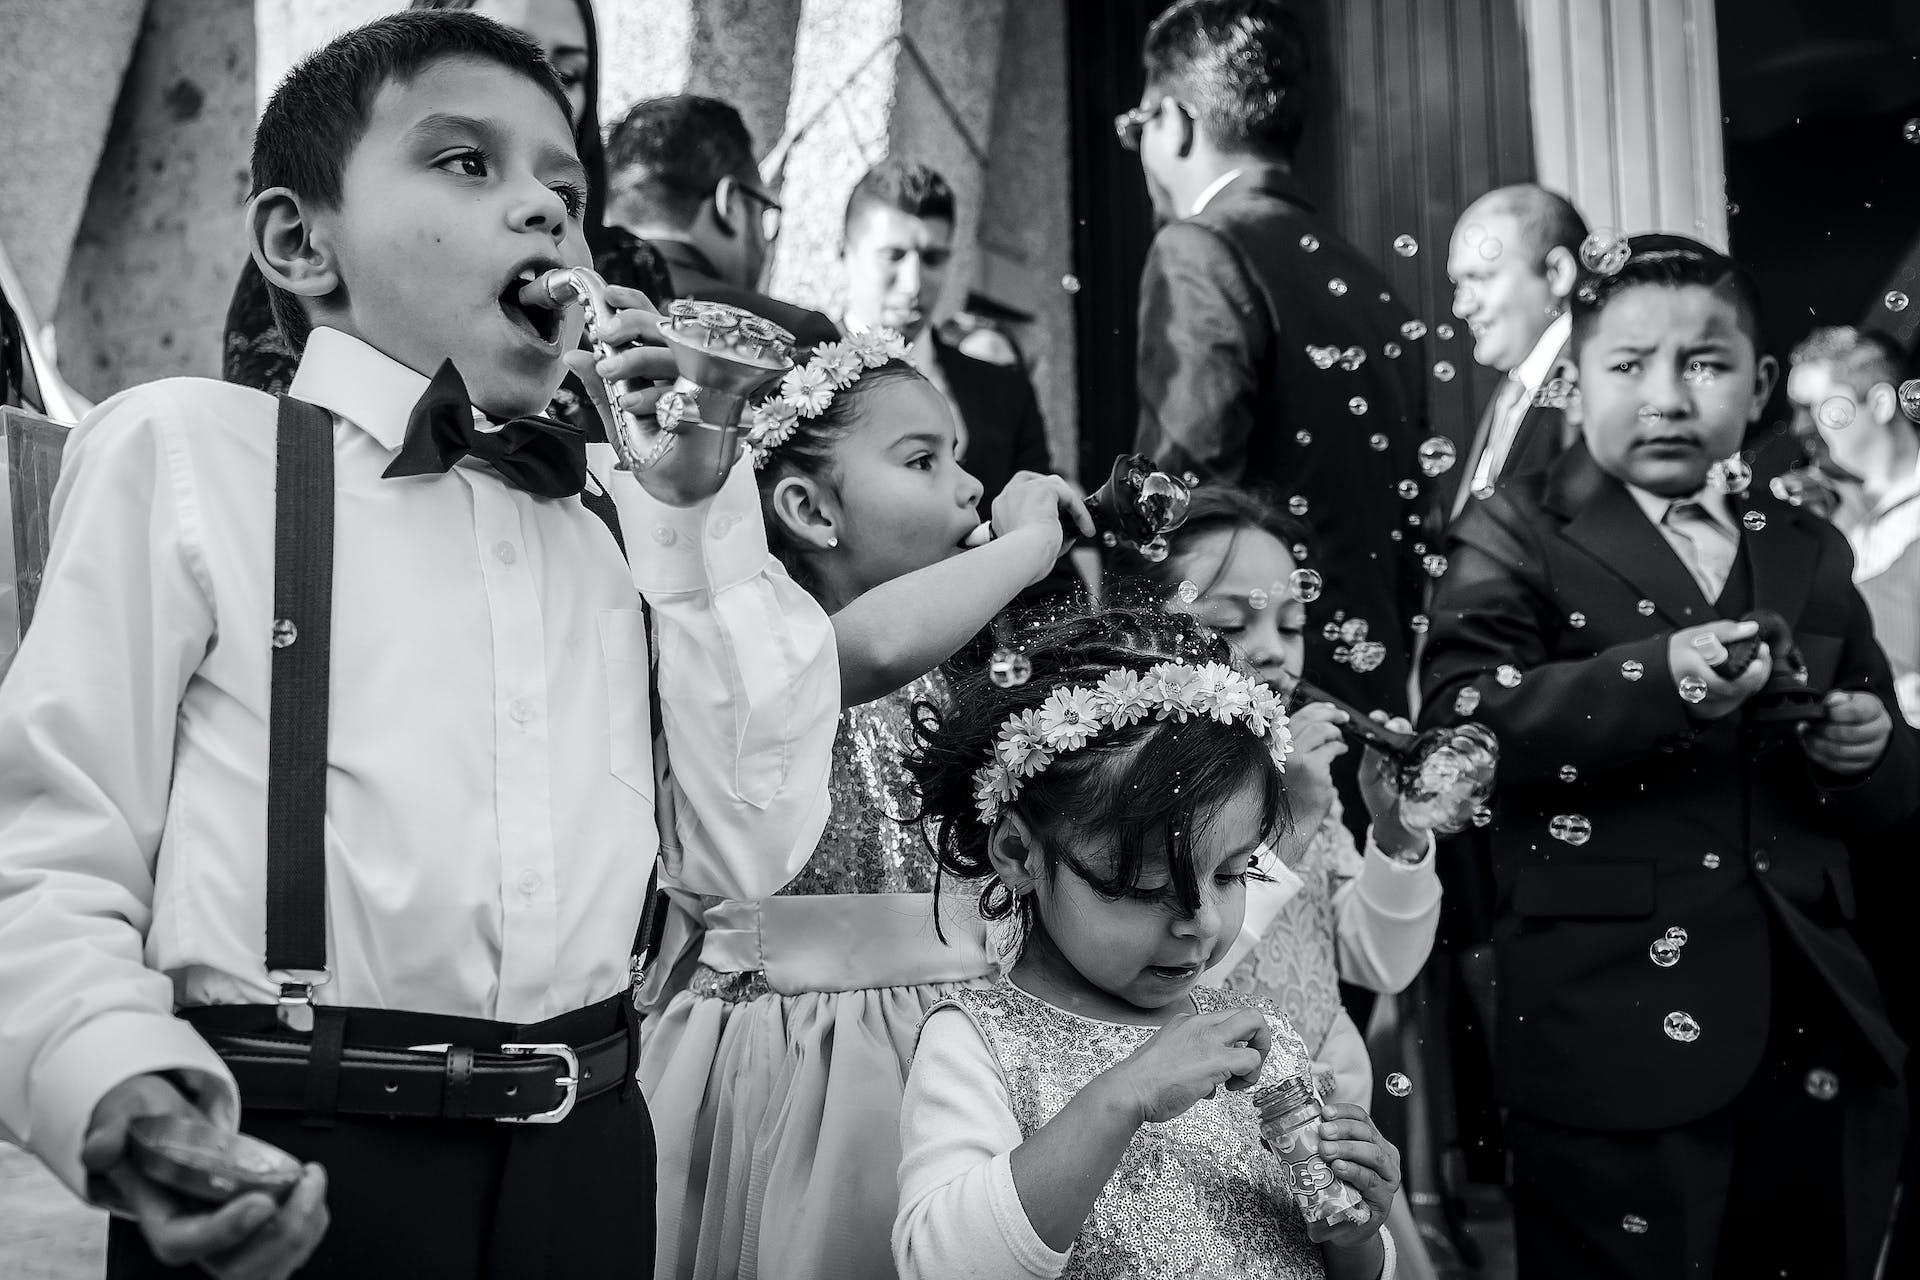 Kinder bei einer Hochzeit | Quelle: Pexels